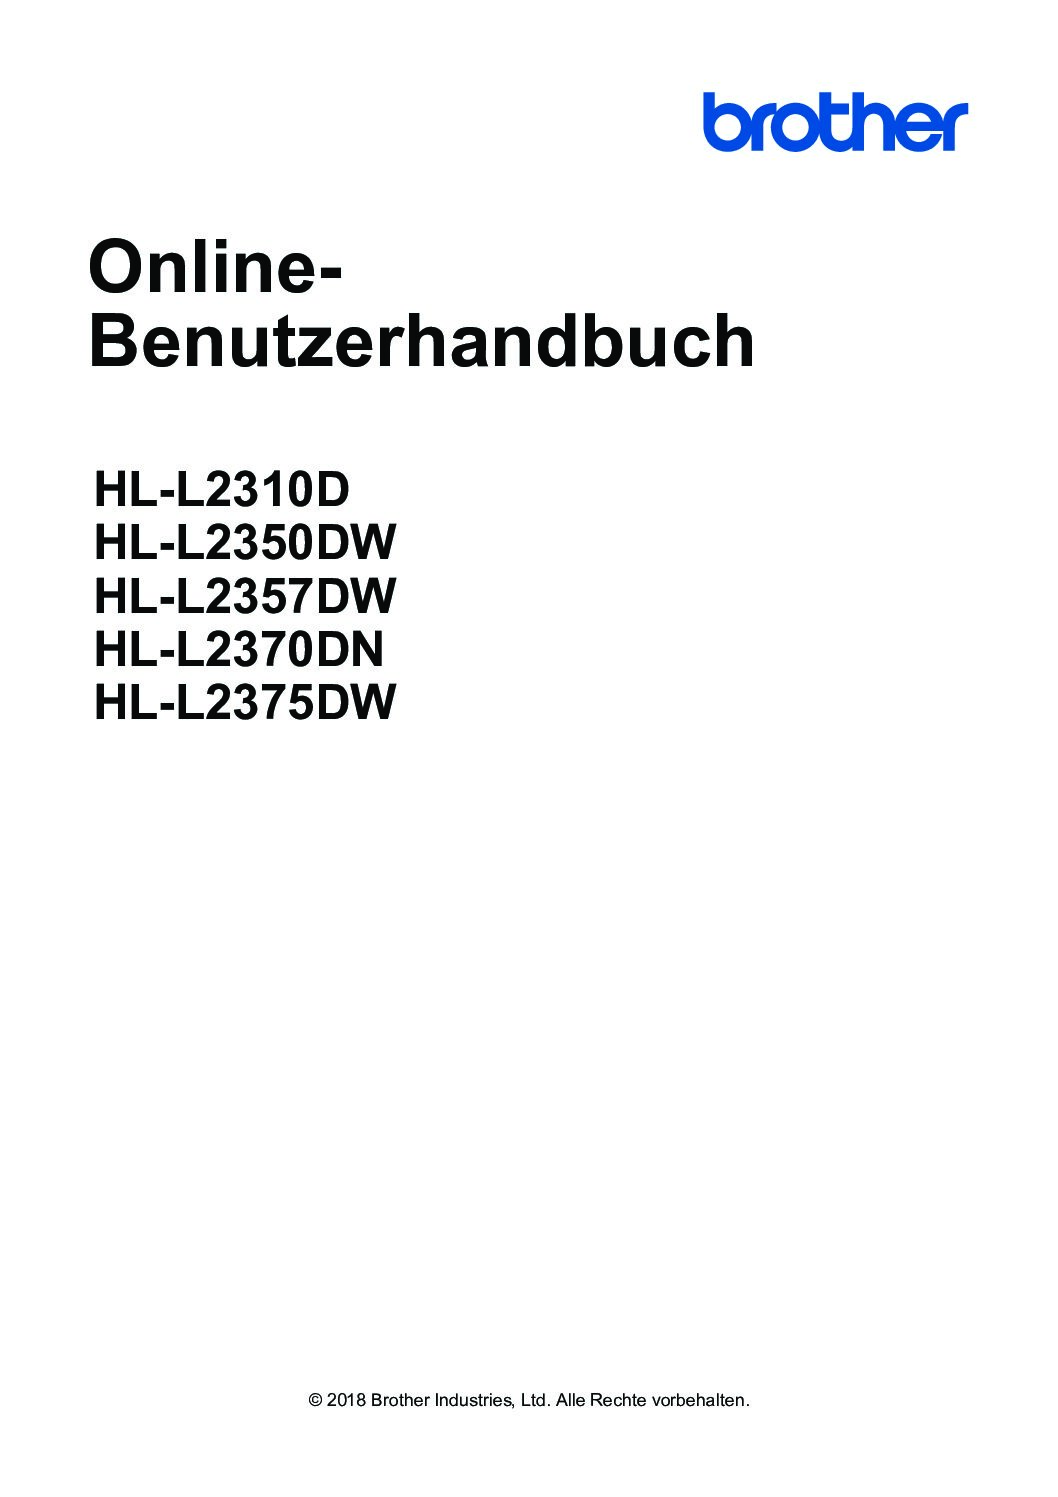 Brother HL-L2375DW Benutzerhandbuch